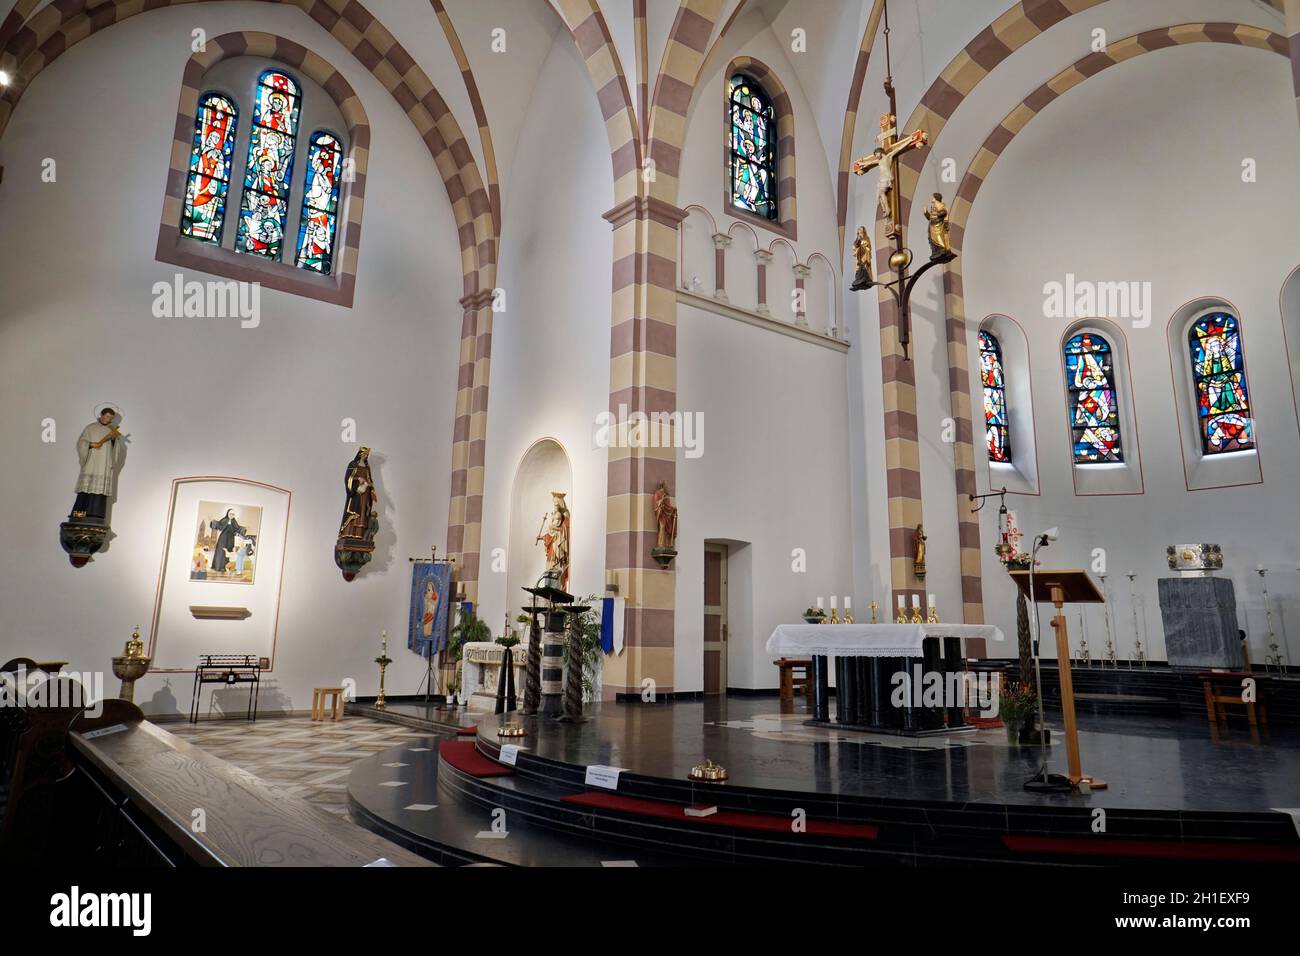 Katholische Pfarrkirche St. Germanus, Wesseling, Nordrhein-Westfalen, Deutschland Banque D'Images